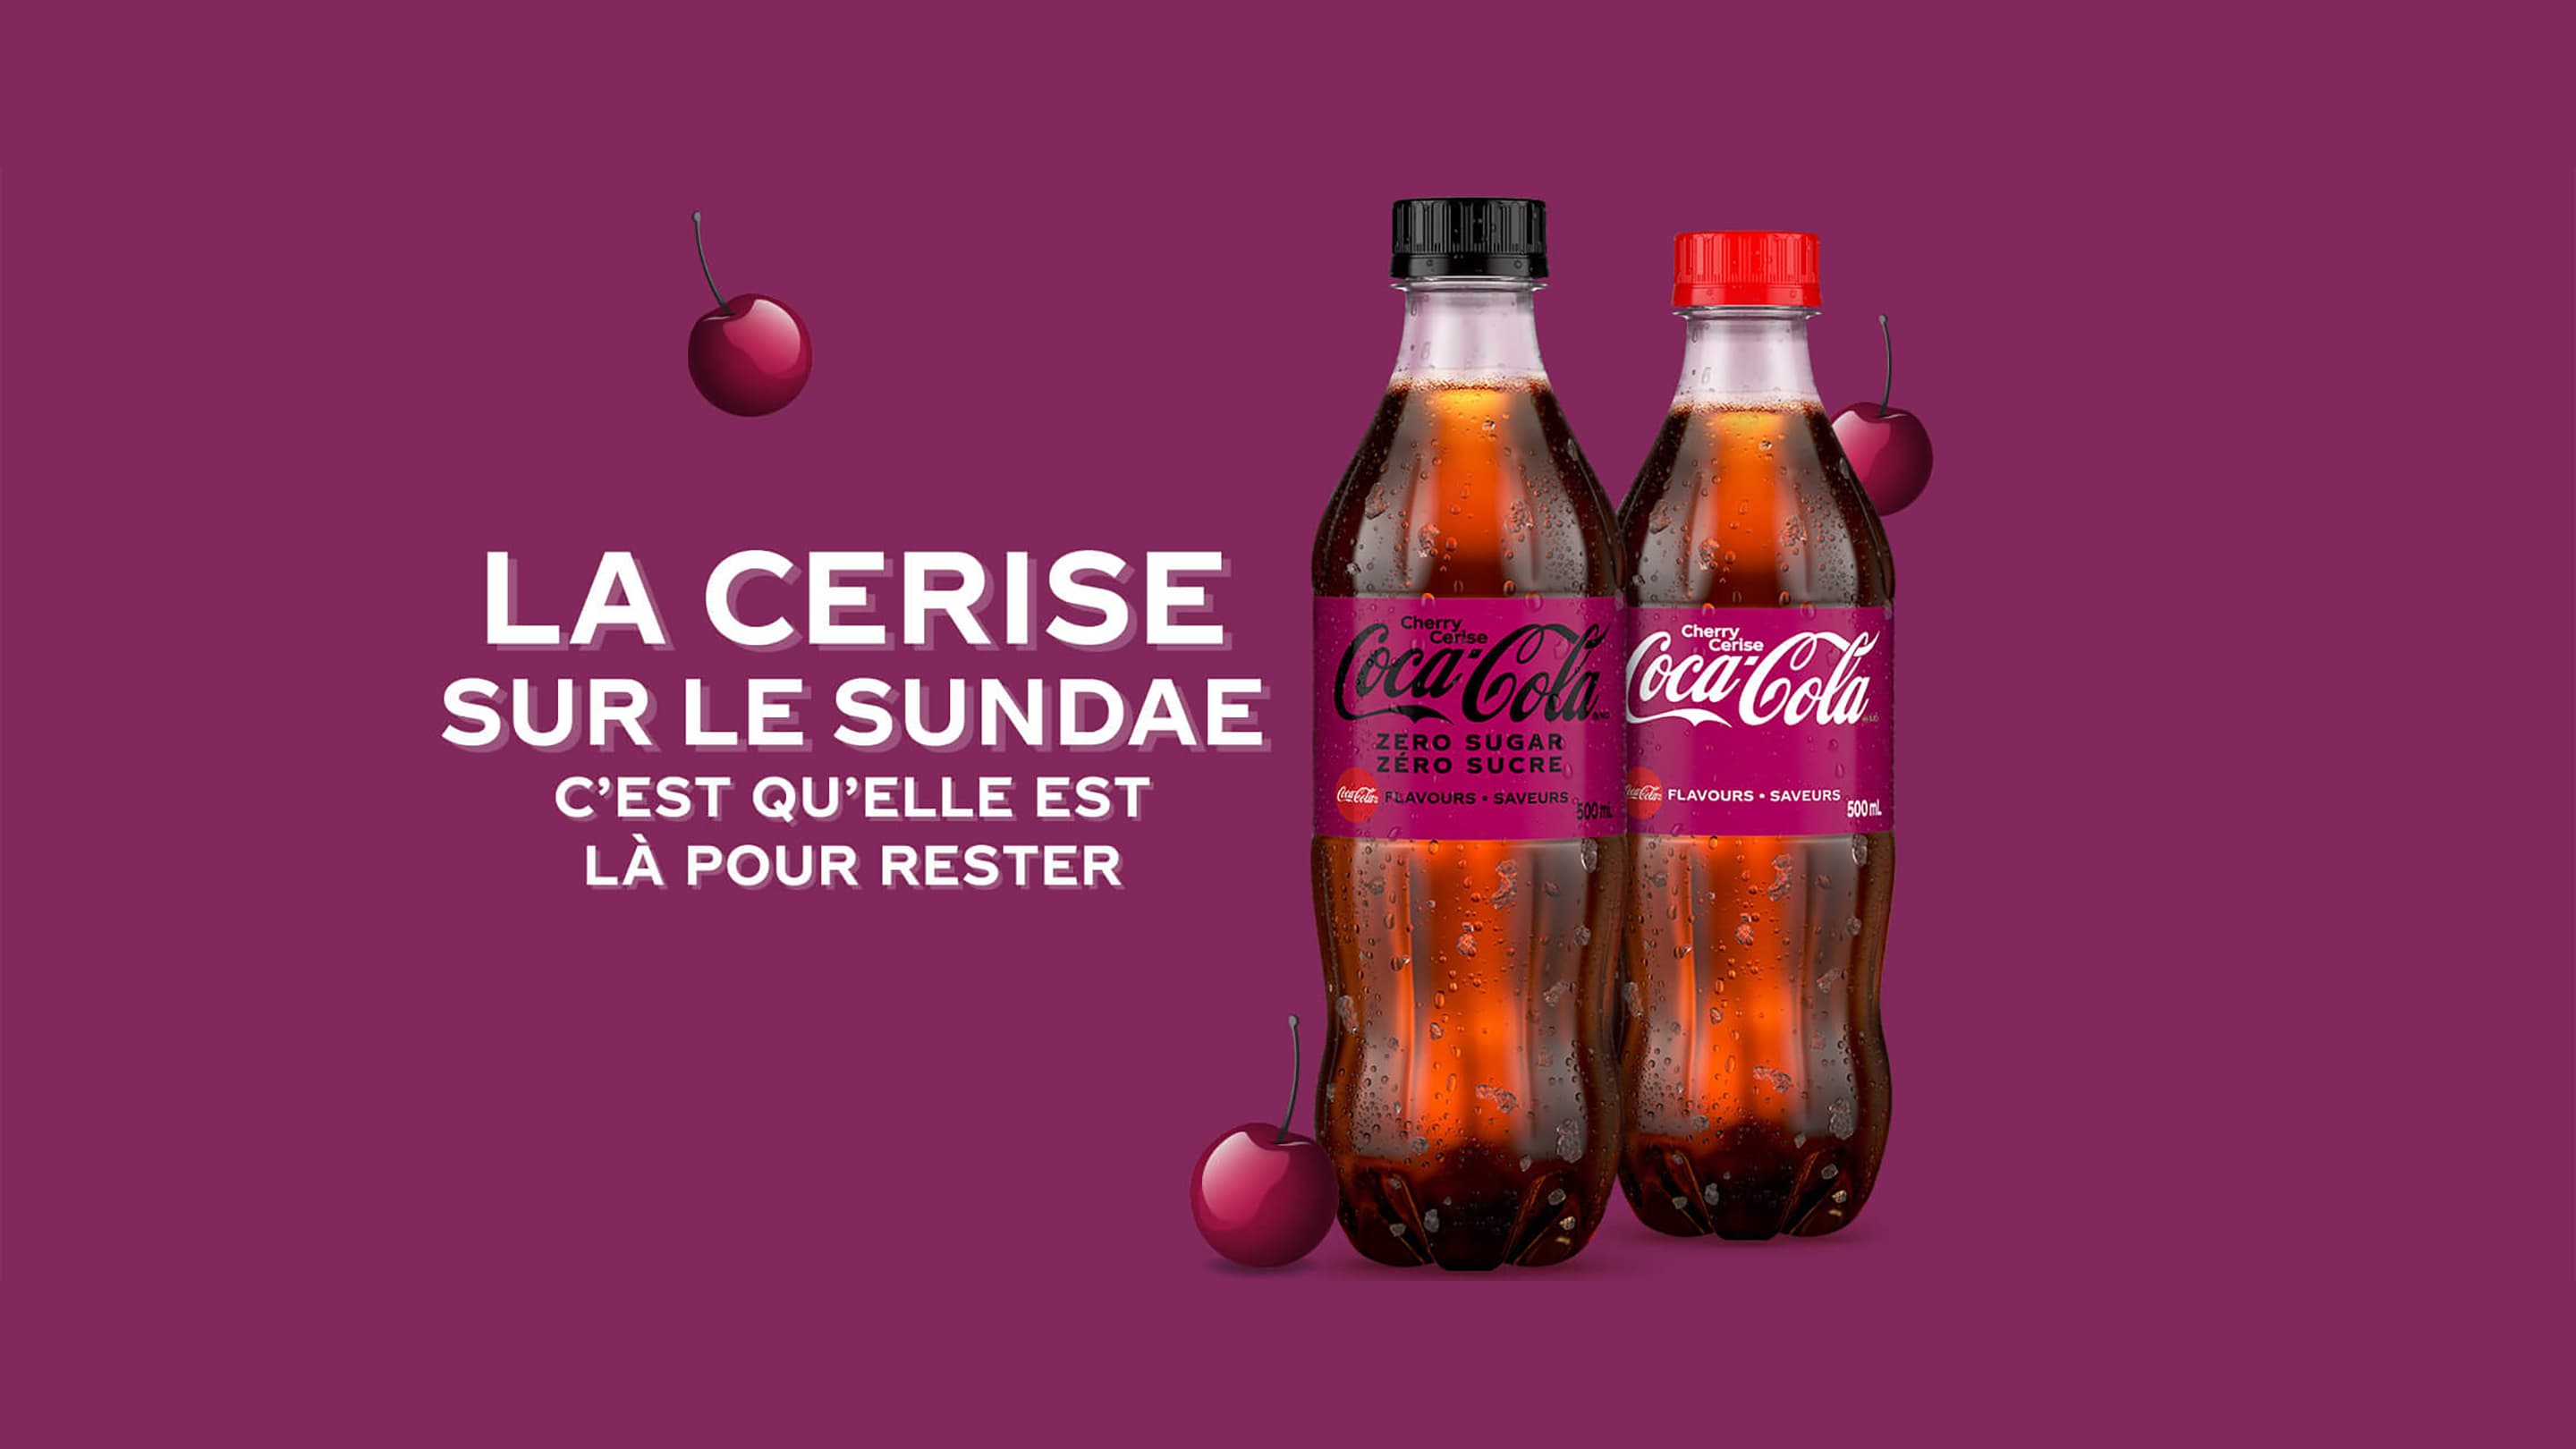 Coca-Cola Cerise. La cerise sur le sundae. C'est qu'elle estlà pour rester.